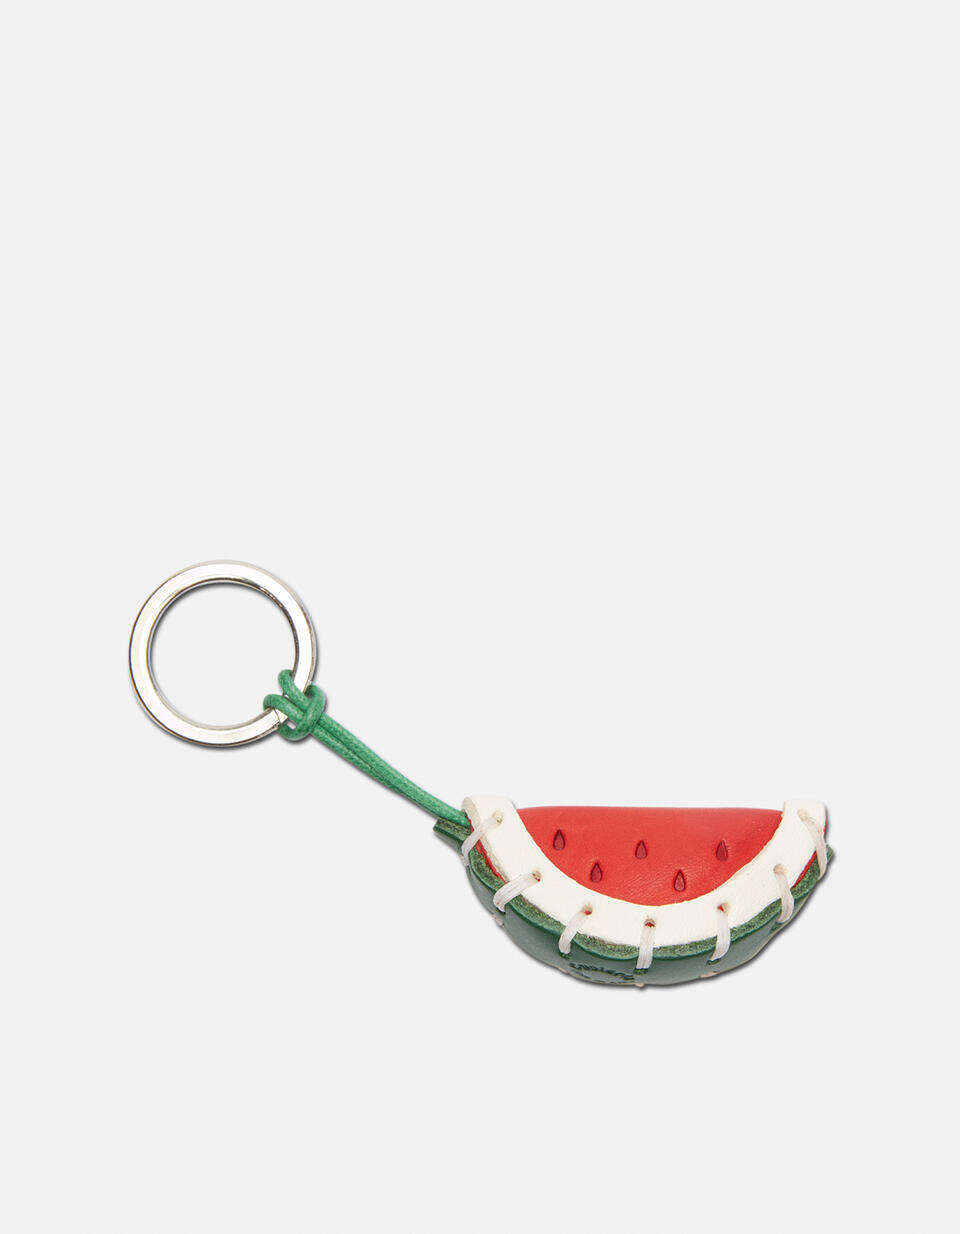 Watermelon  Leather keychain - Key holders - Women's Accessories | Accessories  - Key holders - Women's Accessories | AccessoriesCuoieria Fiorentina